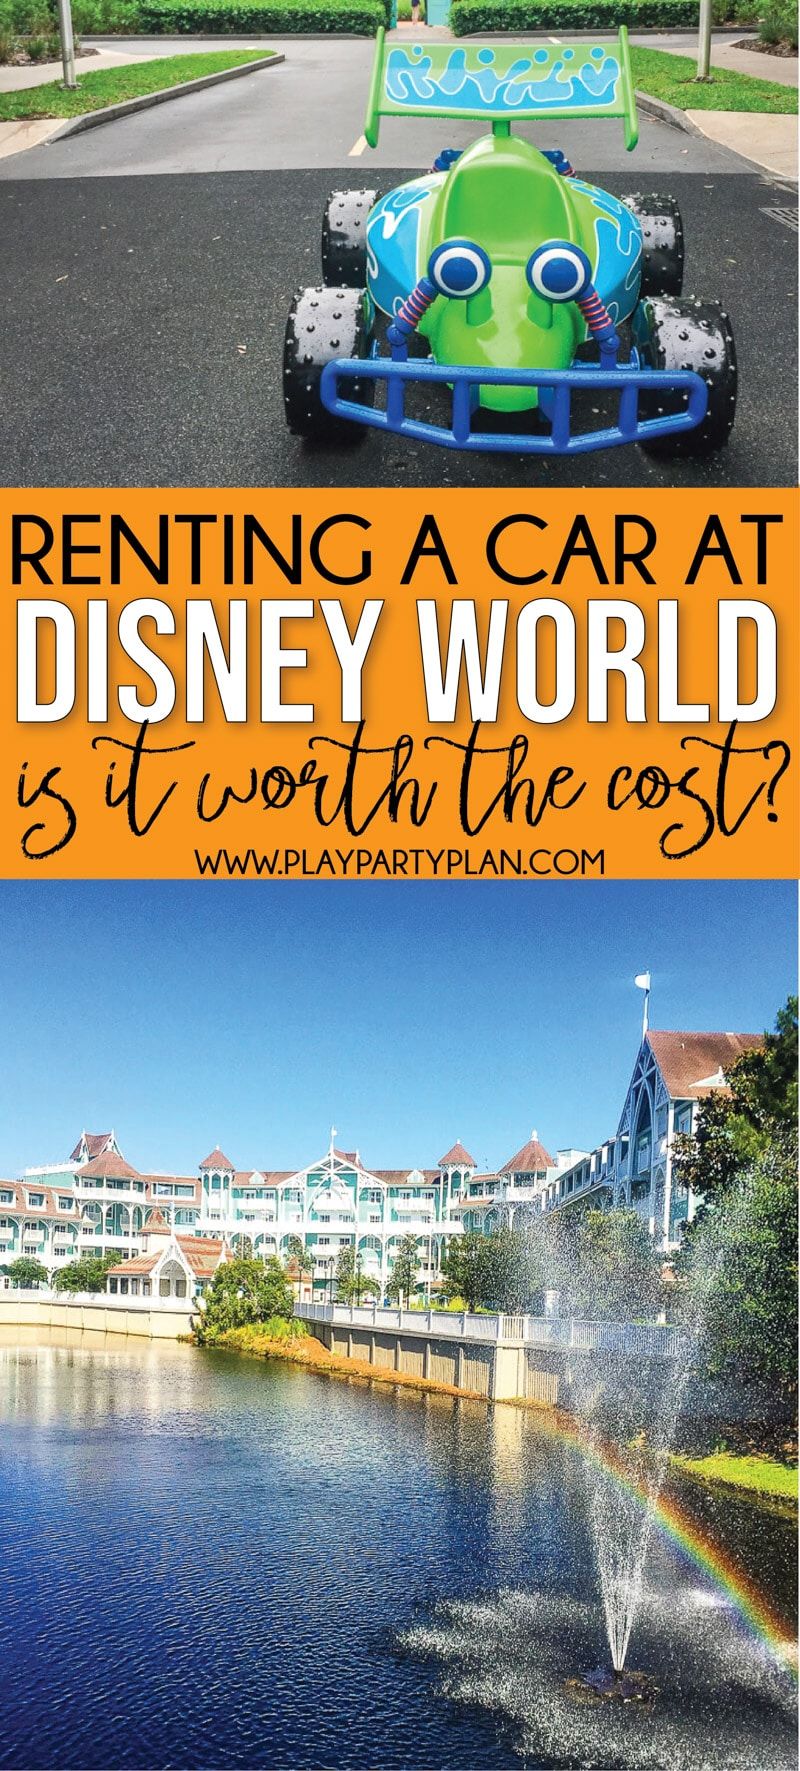 Měli byste si pronajmout auto v Disney Worldu? 12 důvodů, proč byste absolutně měli!